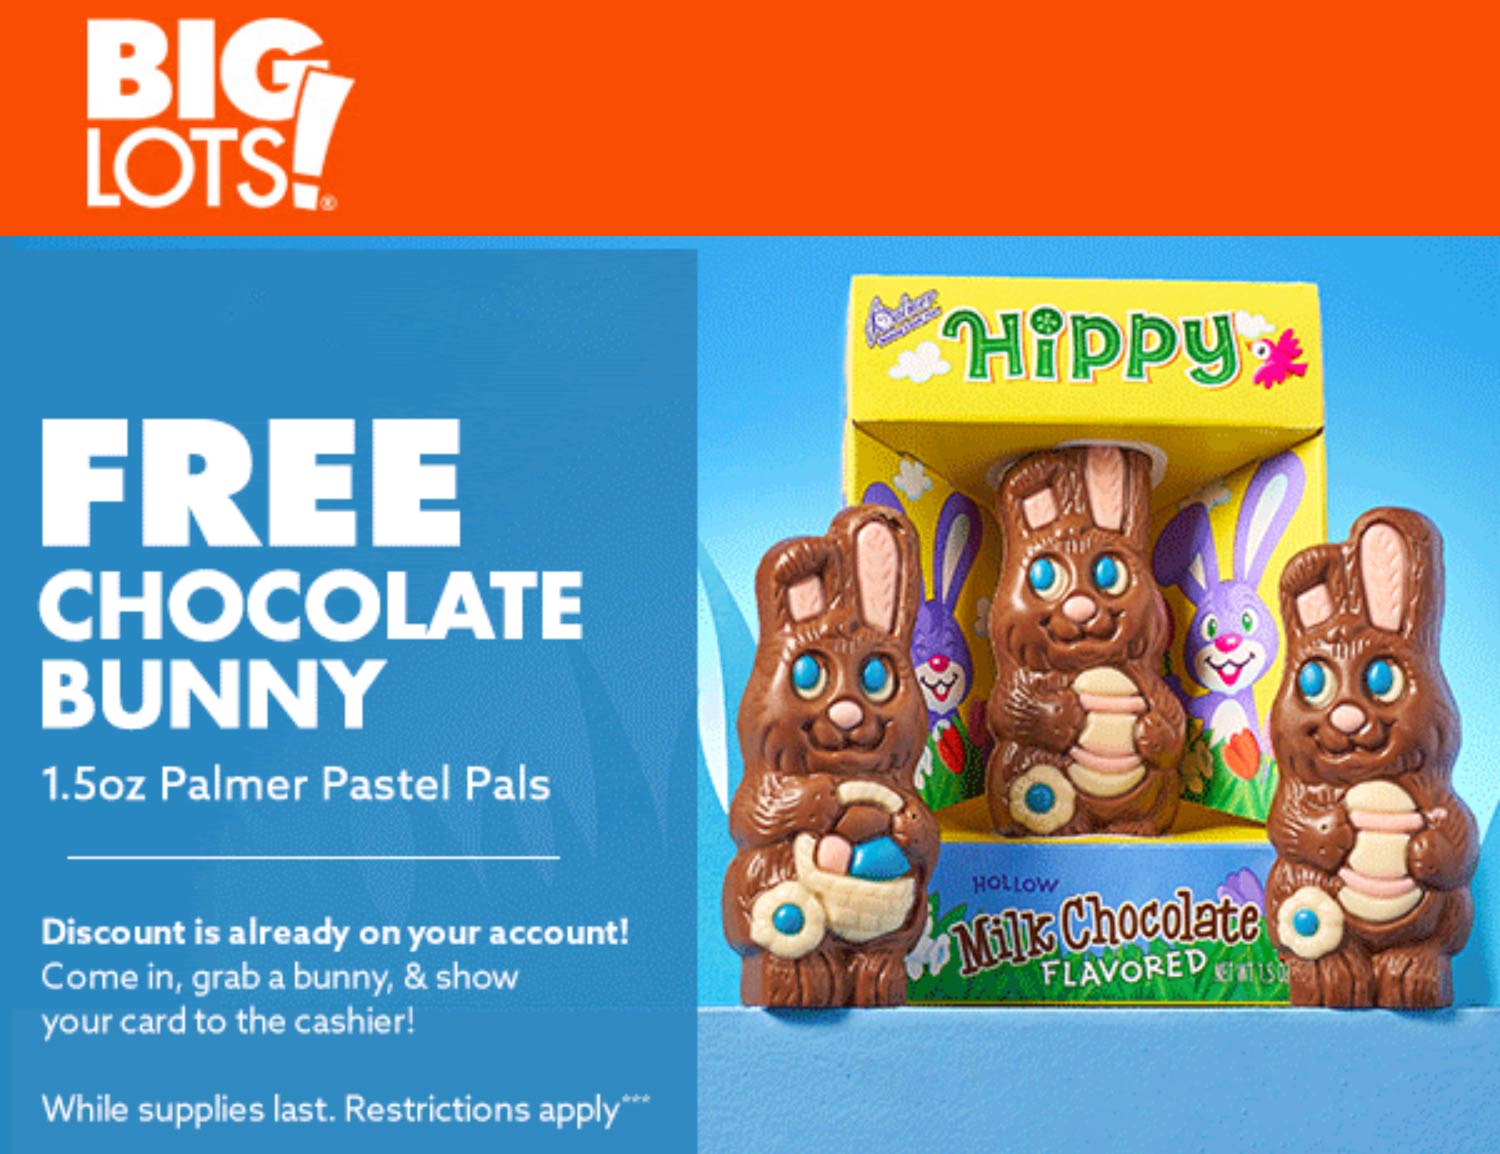 Big Lots stores Coupon  Free chocolate bunny today at Big Lots #biglots 